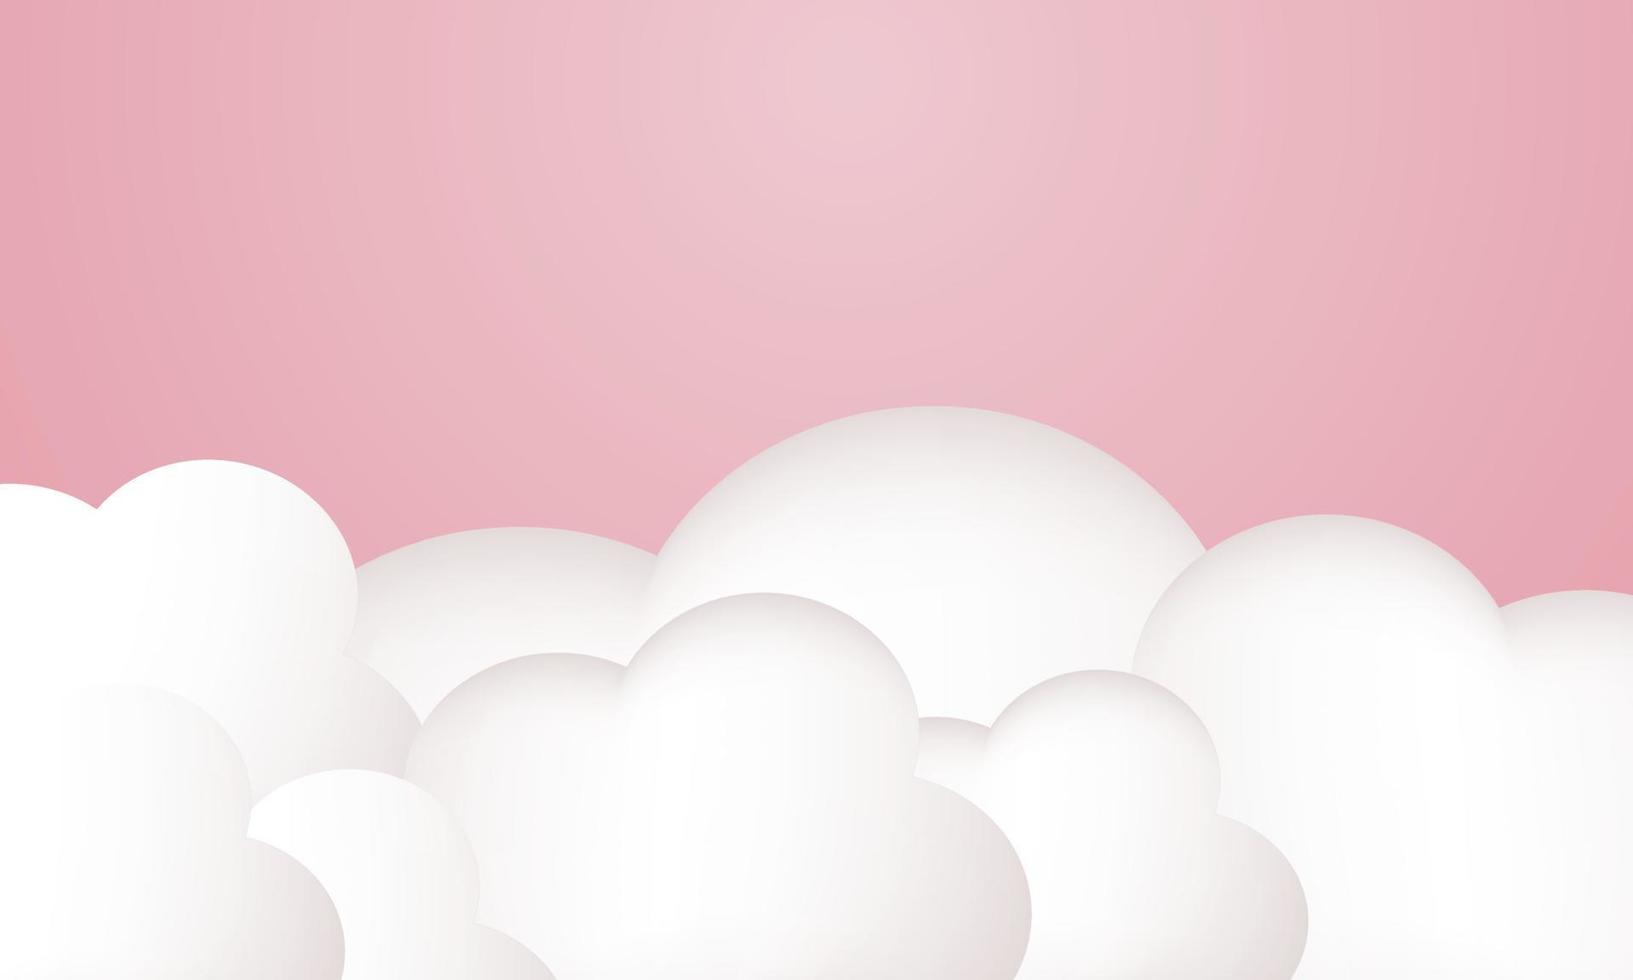 Abbildung 3D schöne Wolken auf rosa Hintergrund statt vektor